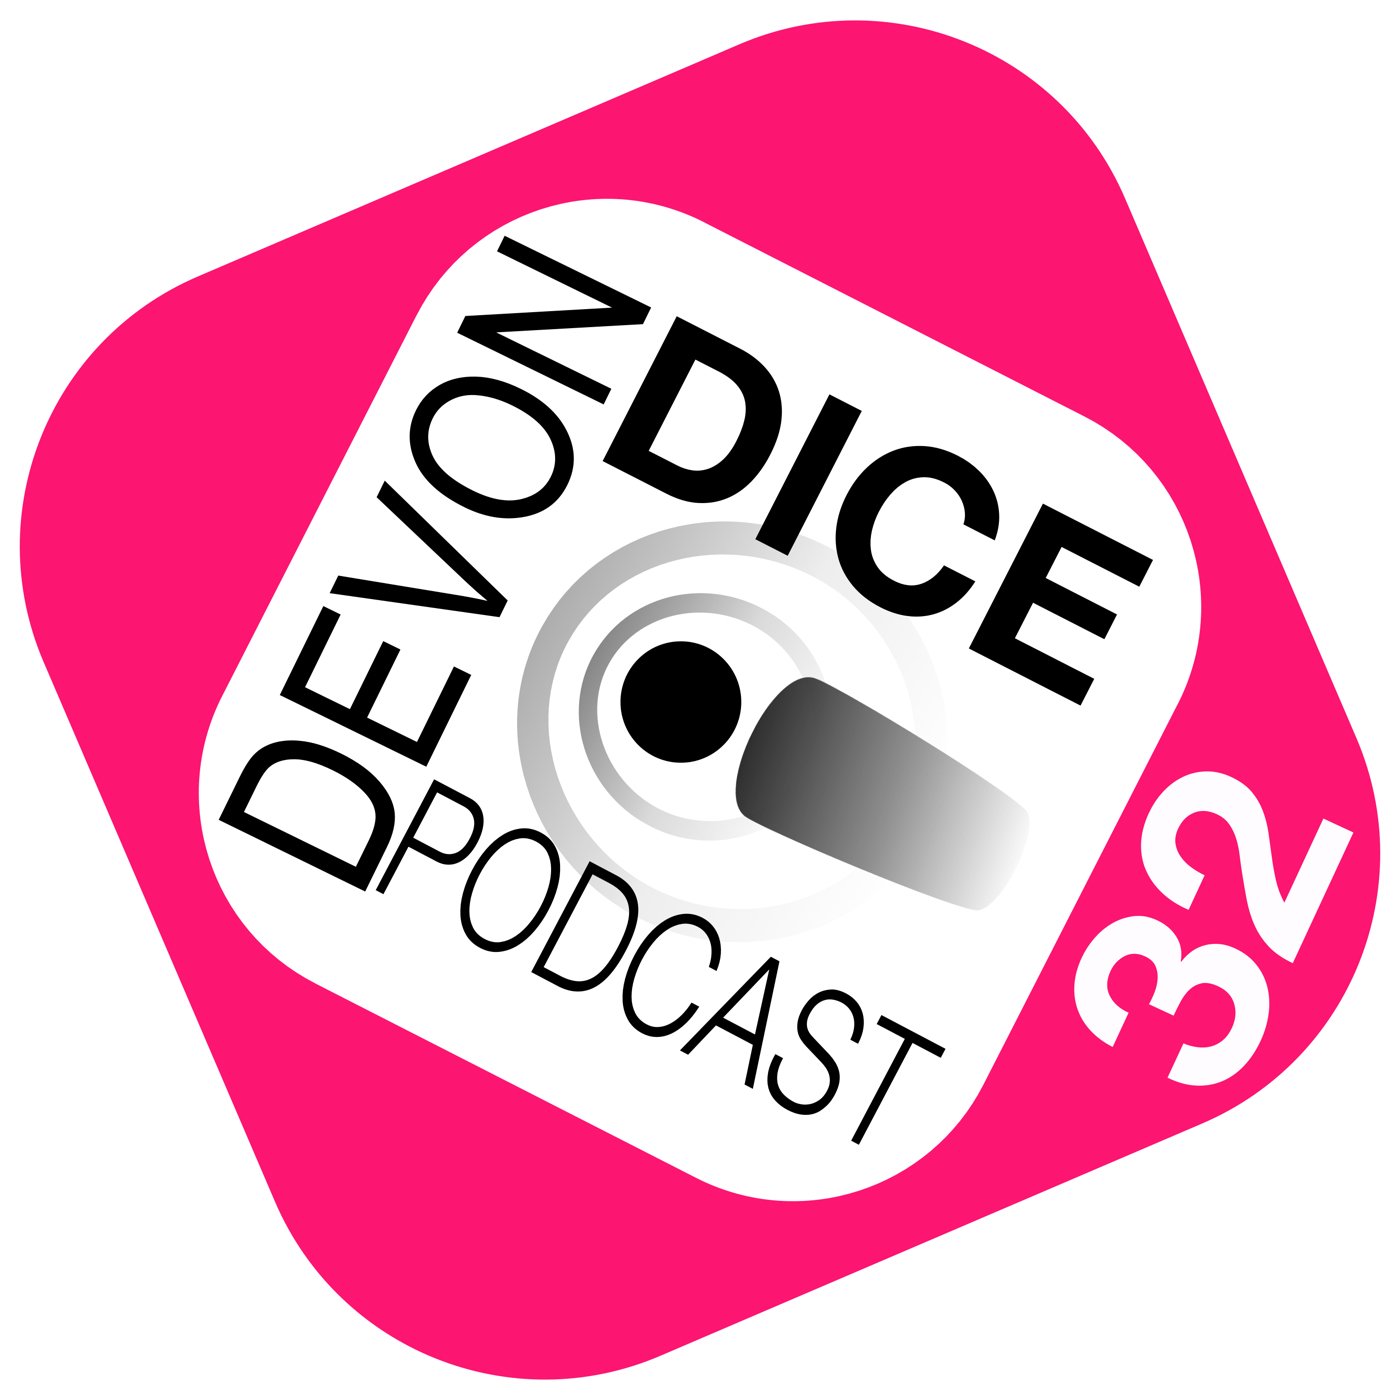 32 Devon Dice Podcast: 2 podcasts in one, Tom Vs Sam